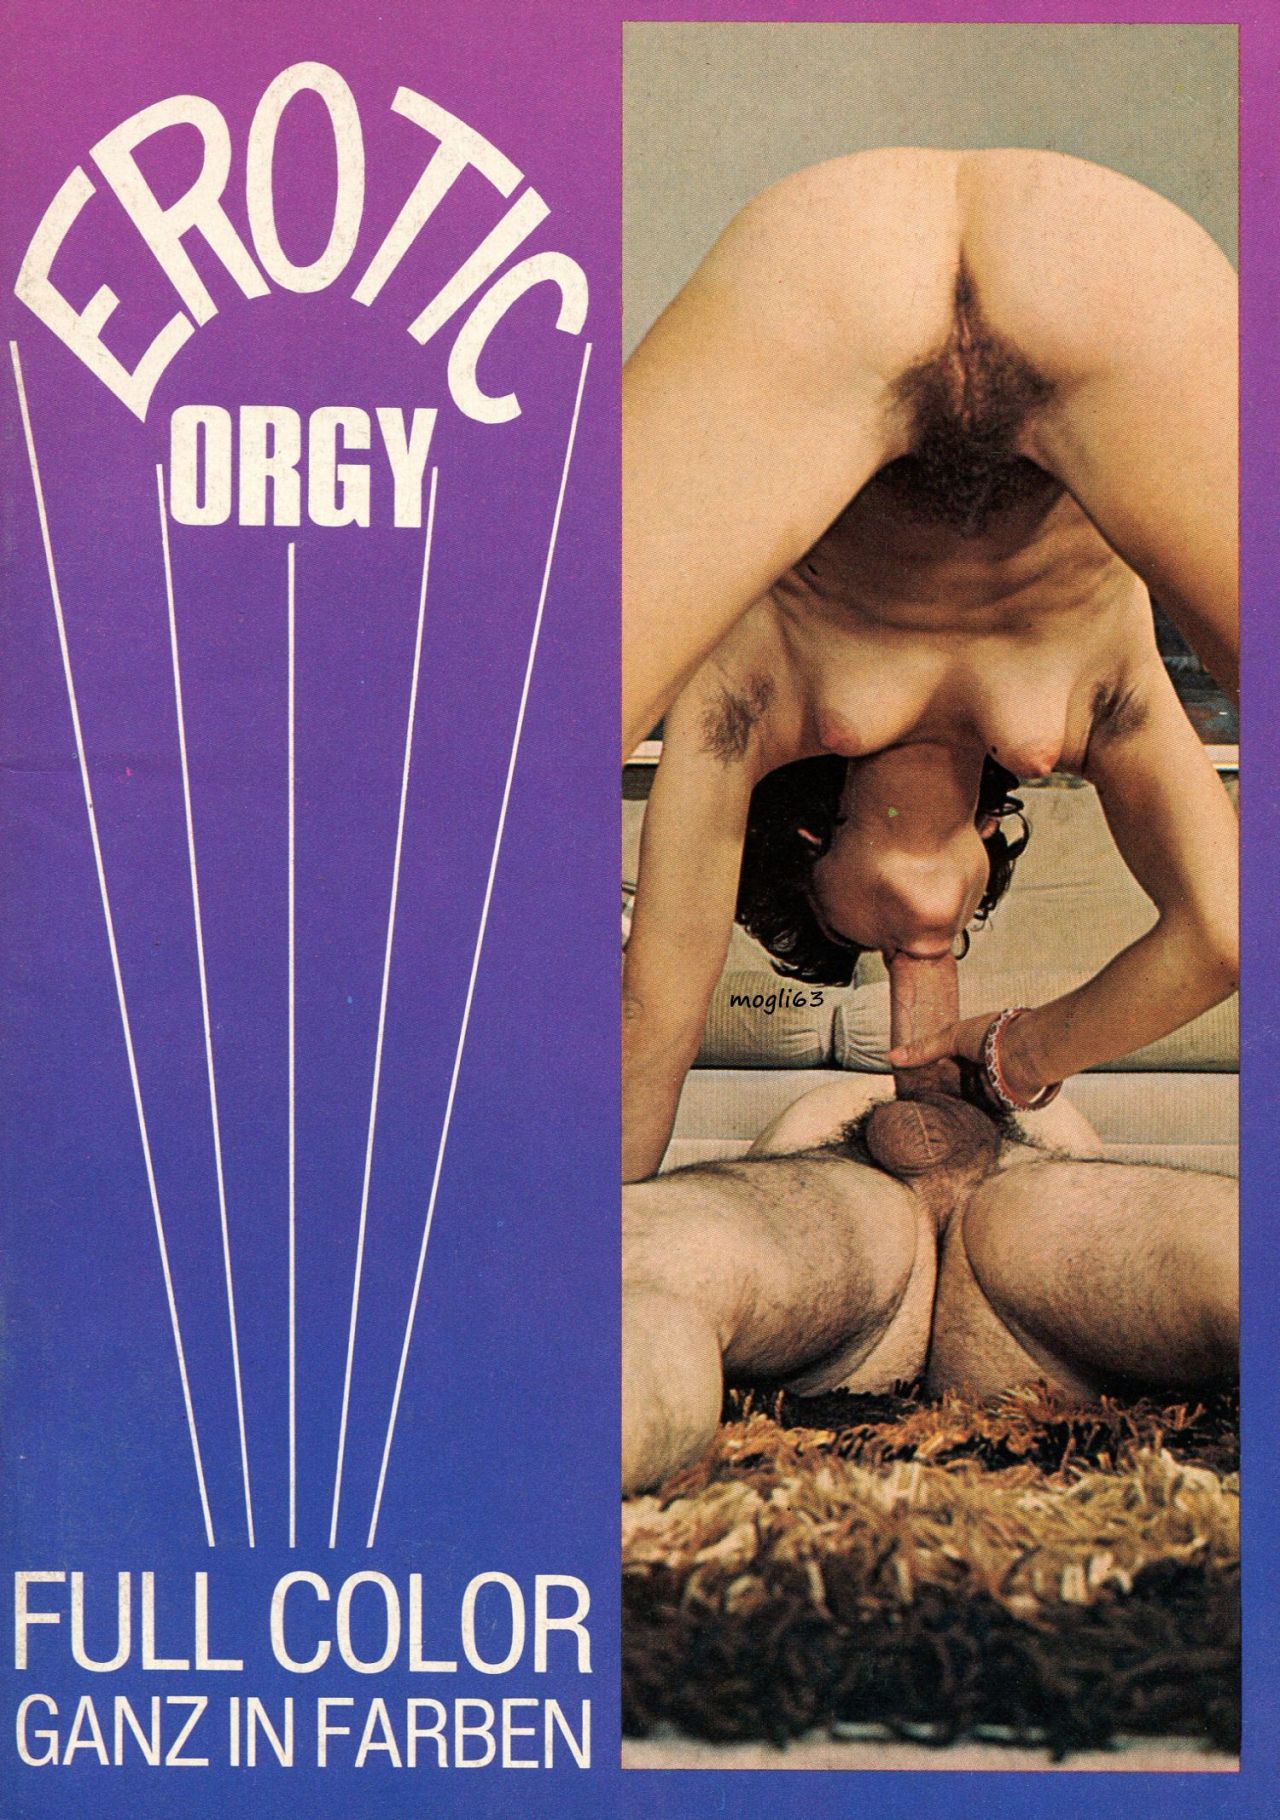 Classic erotic orgy